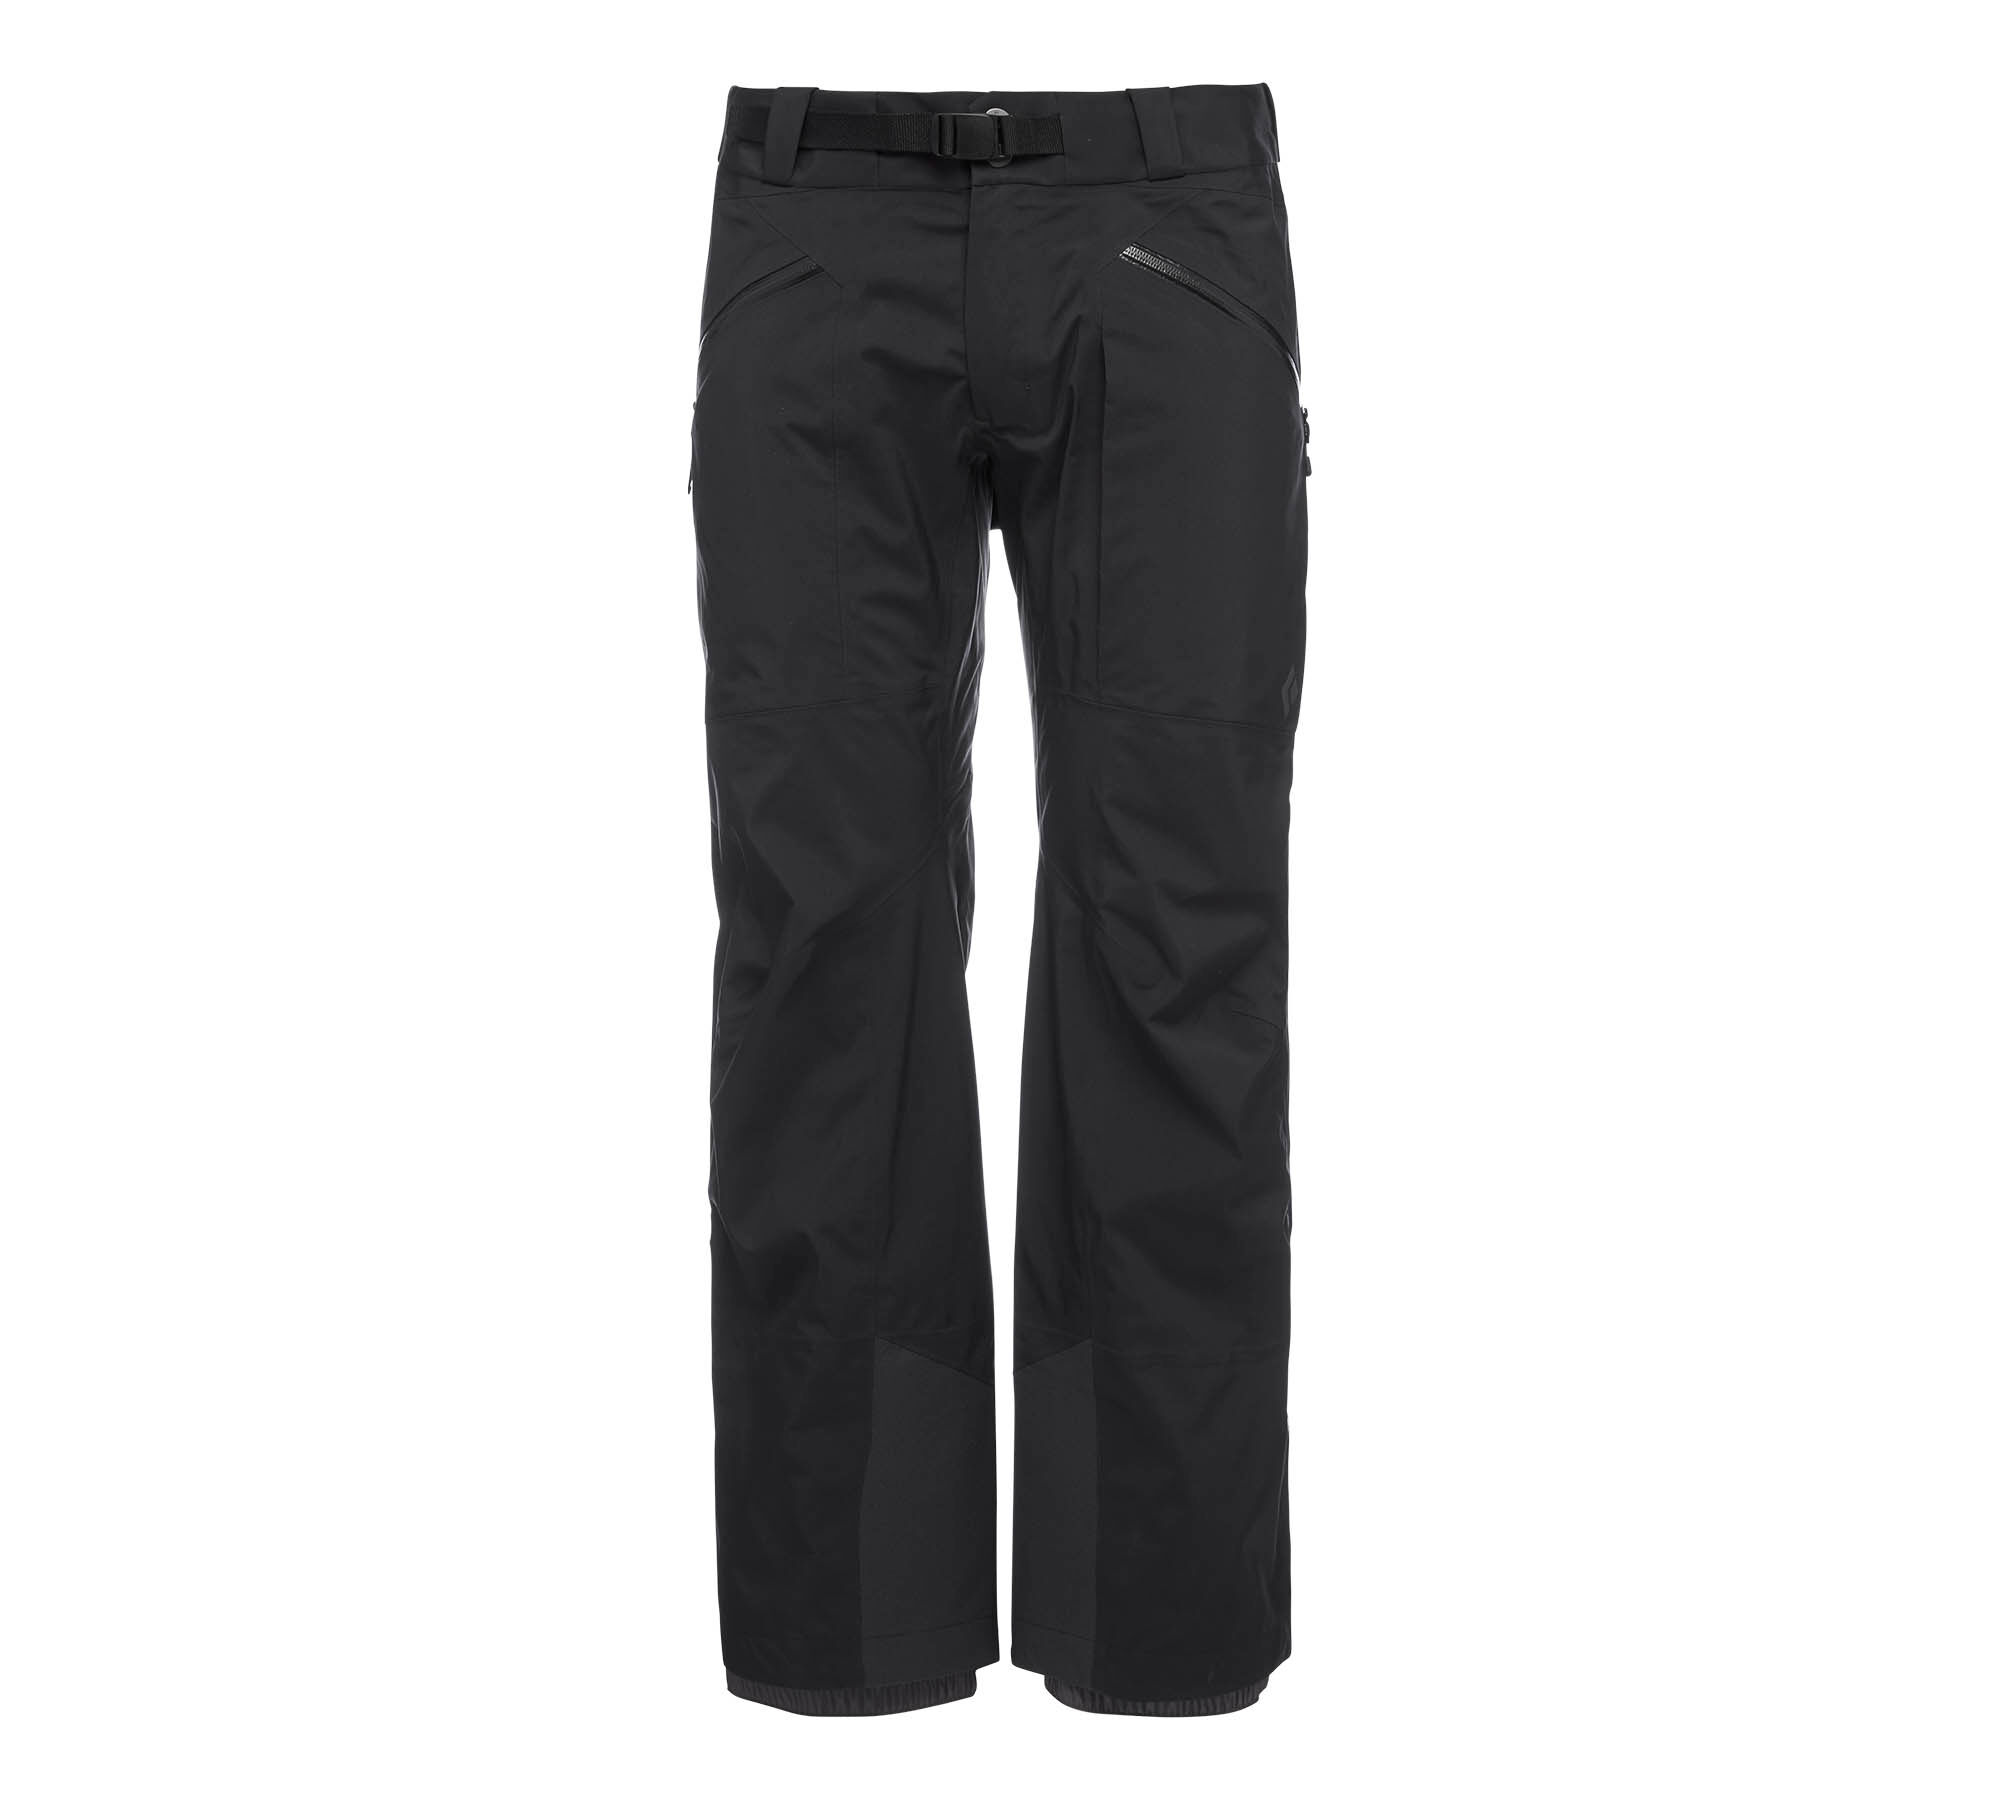 Black Diamond Mission Pants - Ski trousers - Men's